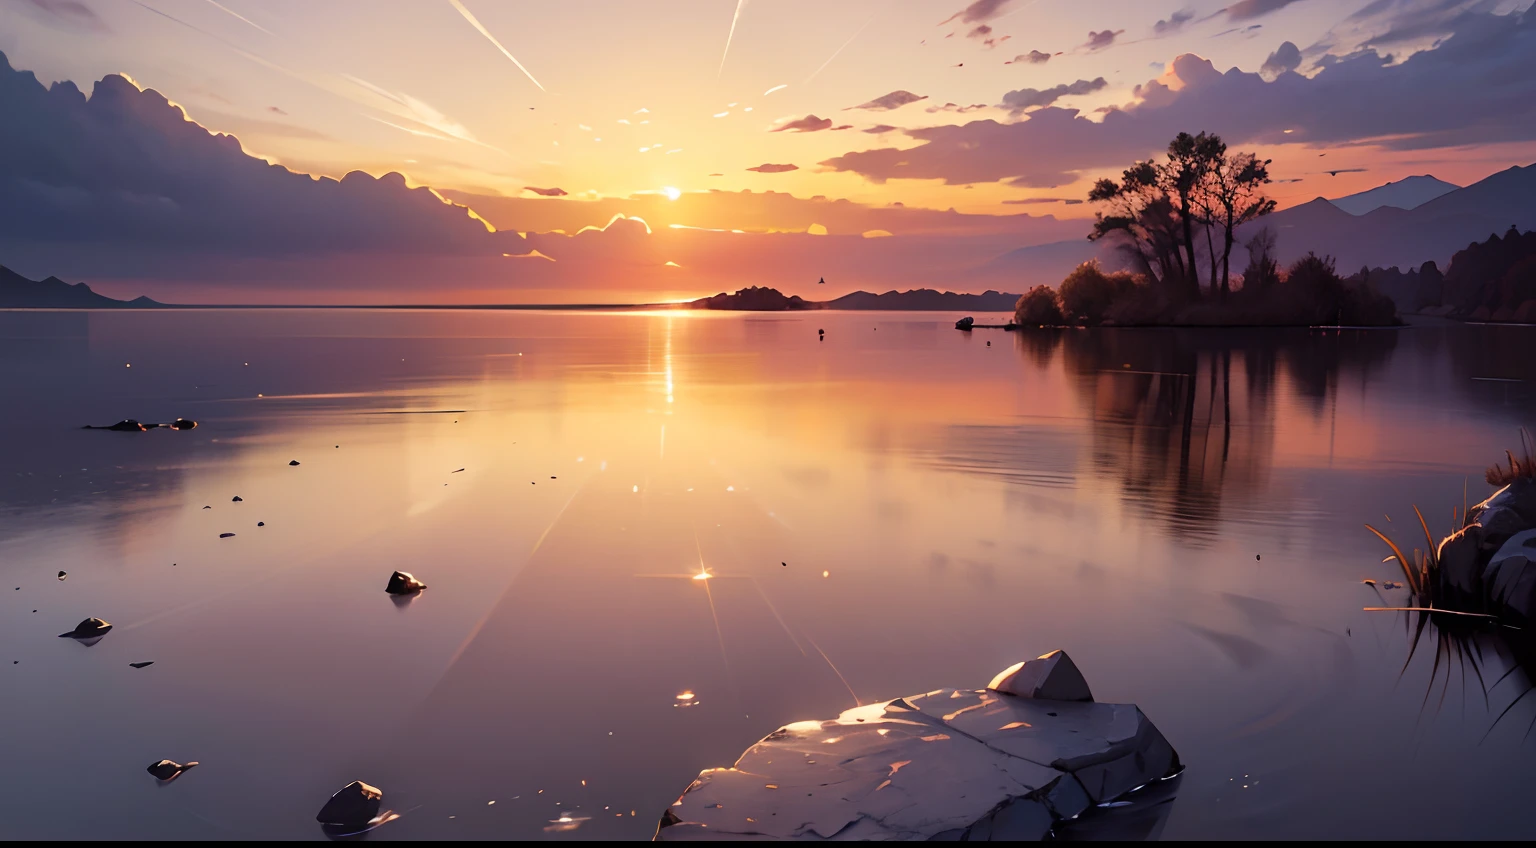 изображение, на котором изображен сияющий восход солнца над спокойным и безмятежным пейзажем